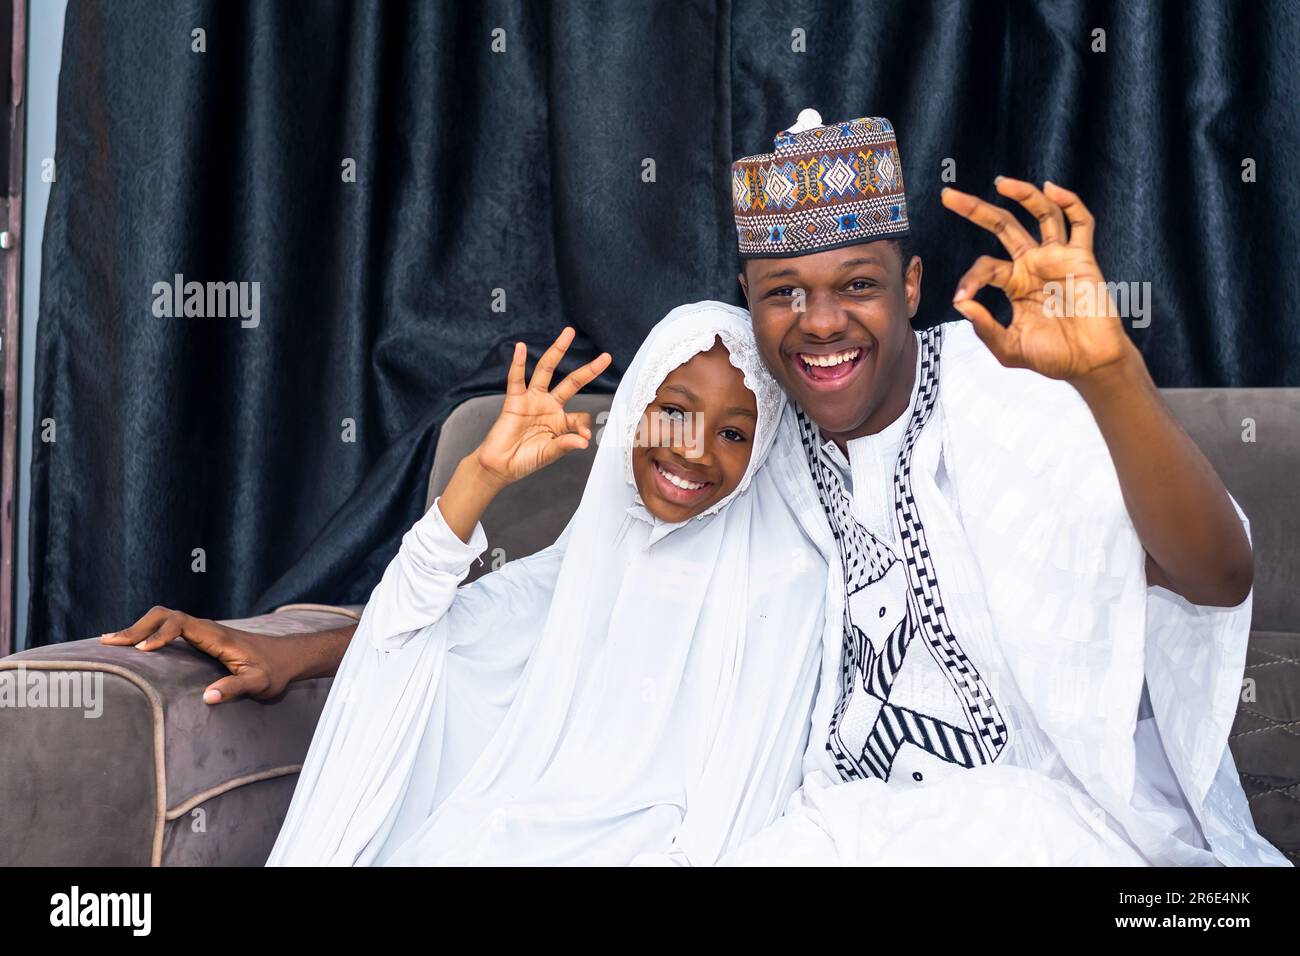 père musulman et fille portant une tenue africaine exprimant le bonheur. Fille portant le hijab émettant des émotions positives Banque D'Images